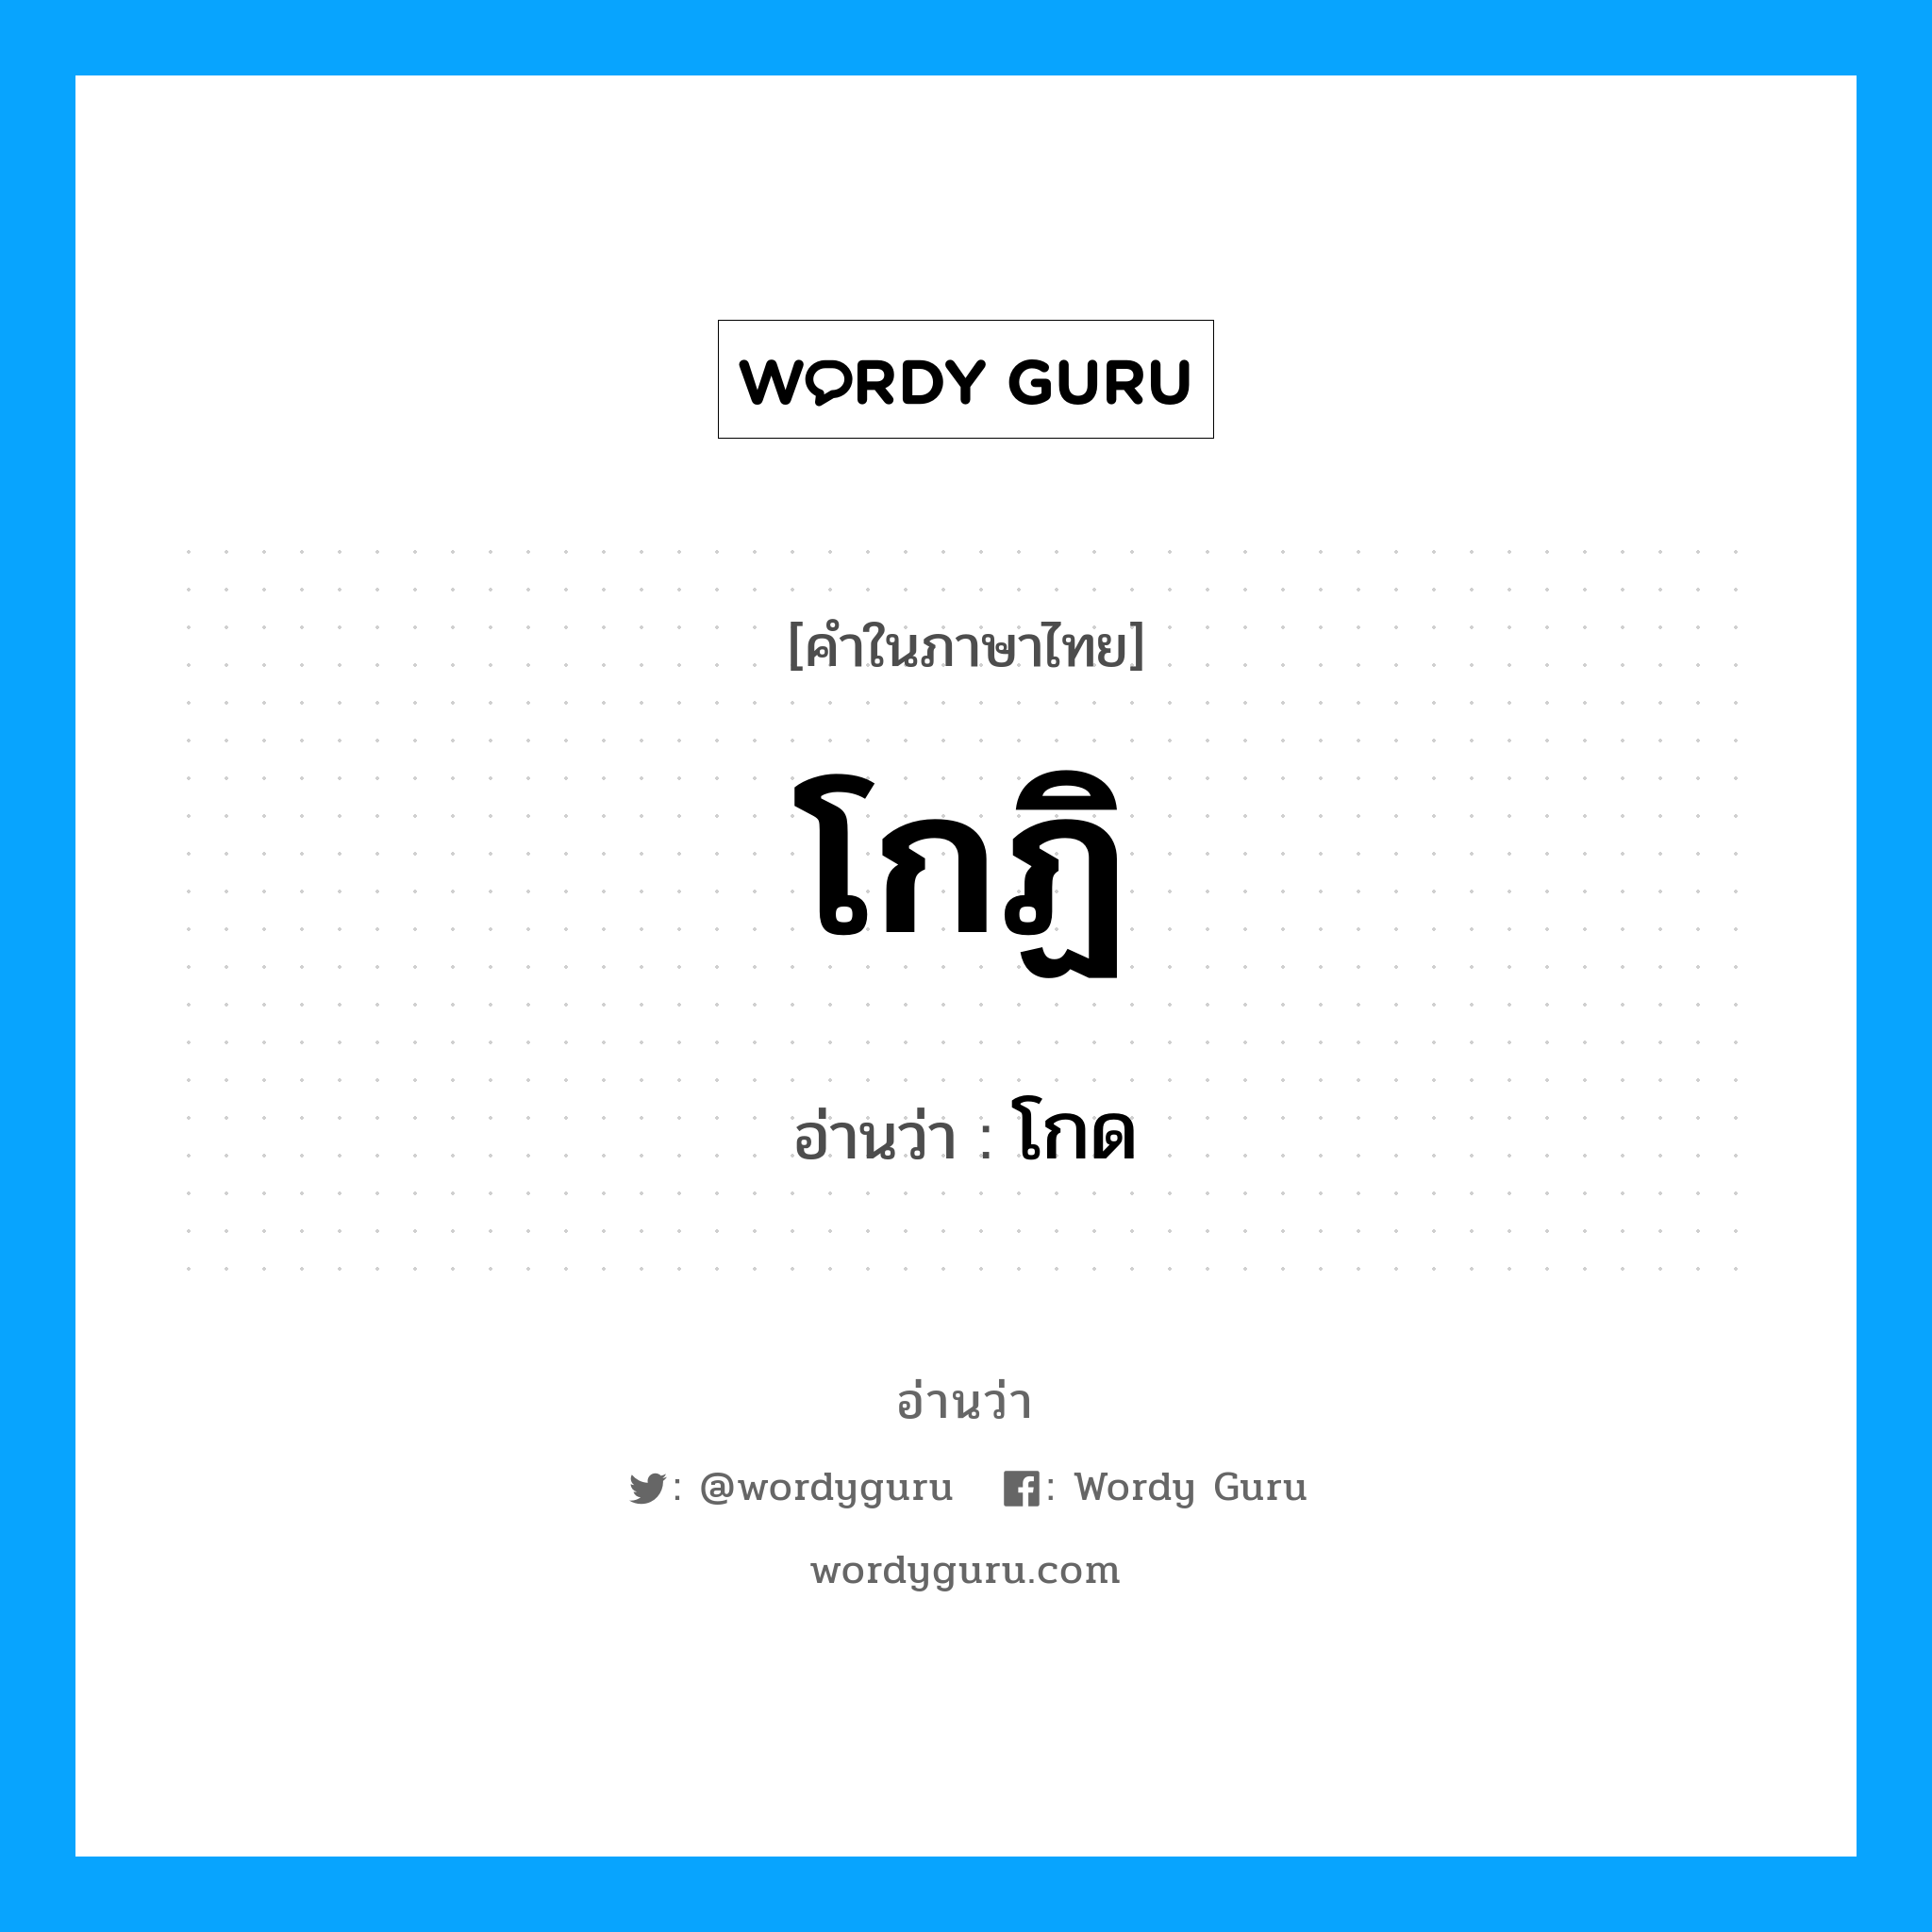 โกด เป็นคำอ่านของคำไหน?, คำในภาษาไทย โกด อ่านว่า โกฏิ